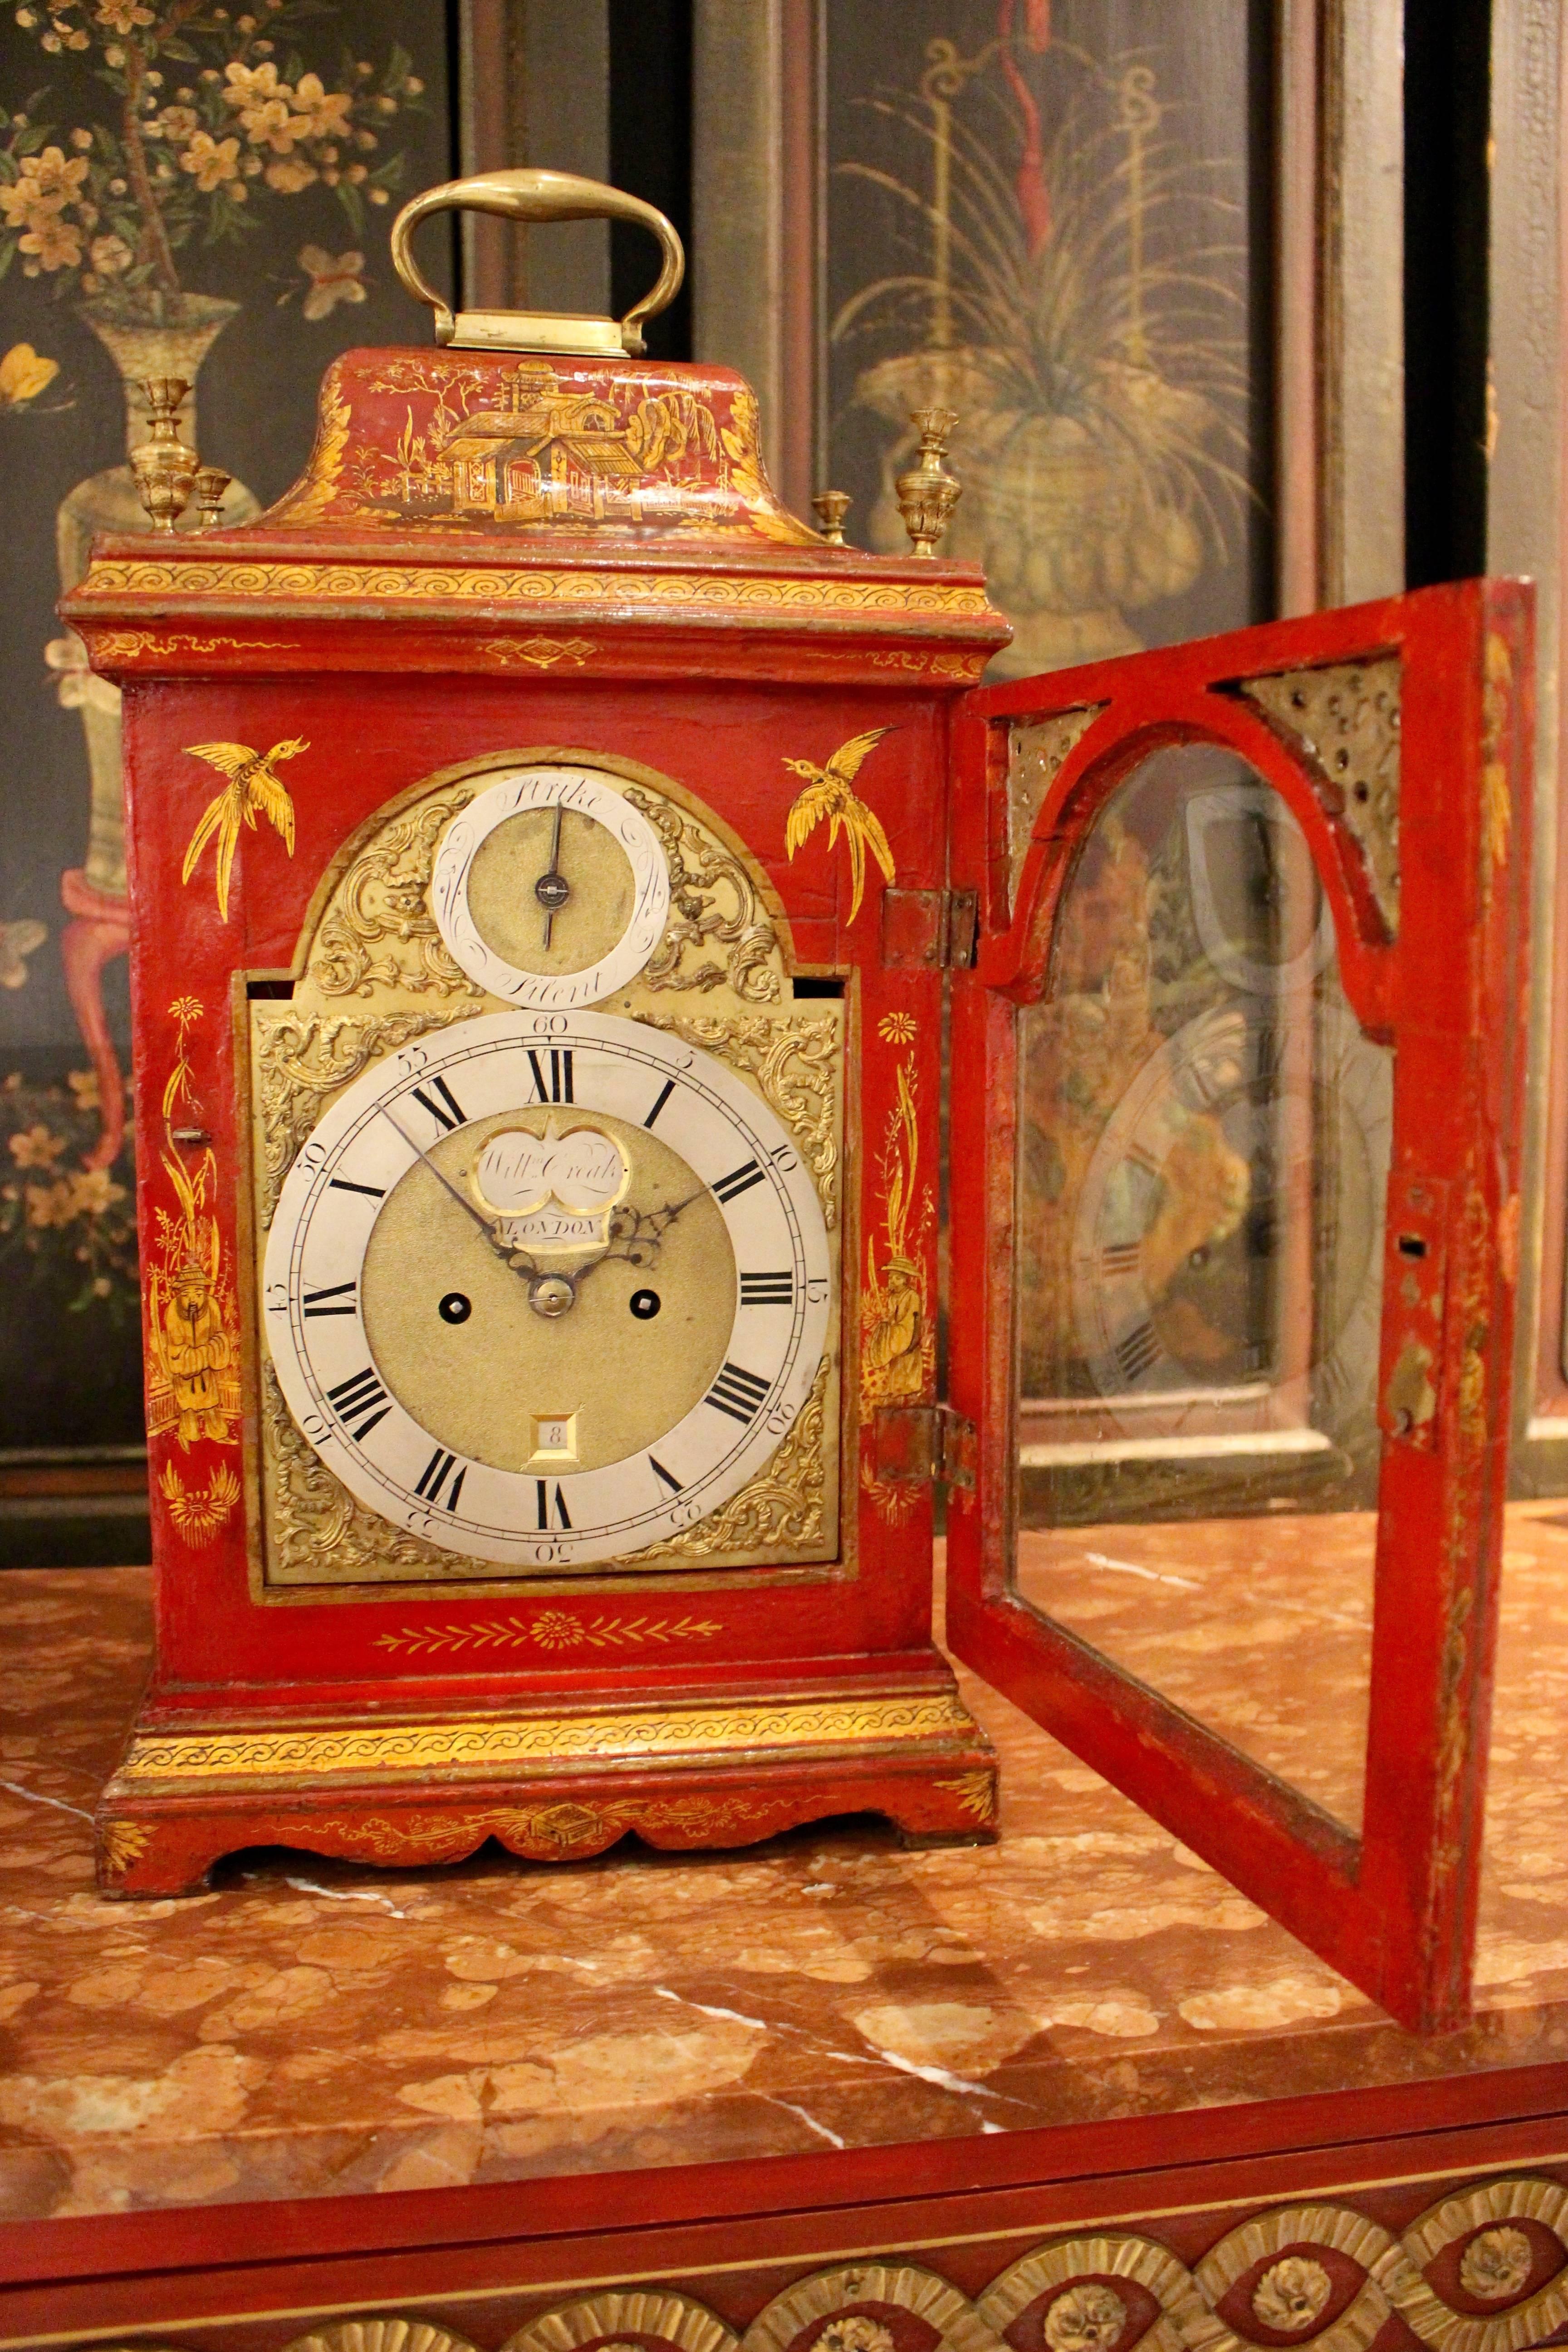 Diese englische Tischuhr aus der Zeit Georgs II. des 18. Jahrhunderts besteht aus einem scharlachroten und paketvergoldeten rechteckigen Gehäuse mit aufwändigem Chinoiserie-Dekor und durchbrochenen Bünden an den Seiten. Das Gehäuse ruht auf einem